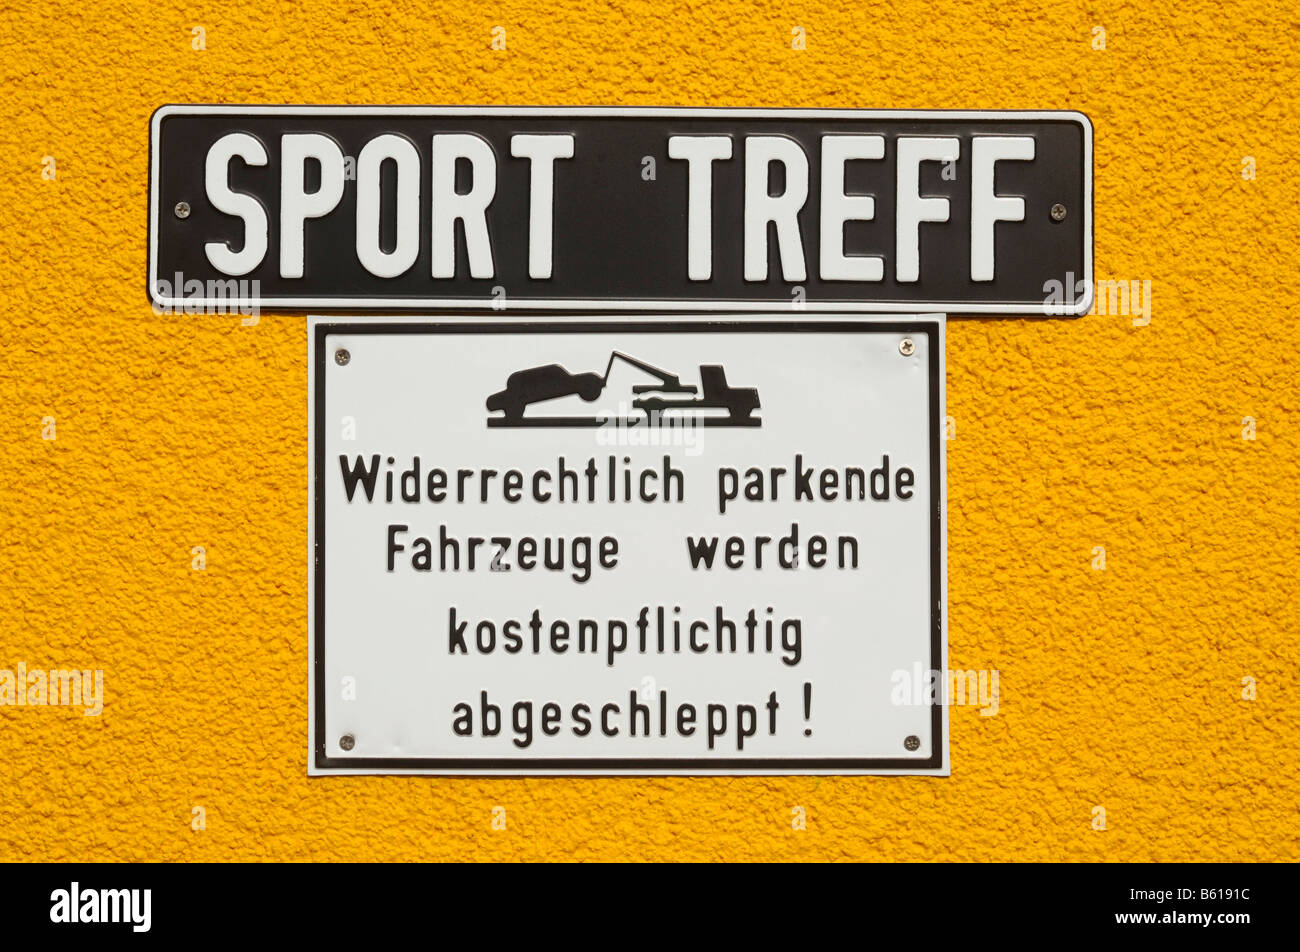 Los signos de la pared amarilla: Sport Treff, Widerrechtlich parkende Fahrzeuge werden kostenpflichtig abgeschleppt!, encuentro deportivo Foto de stock